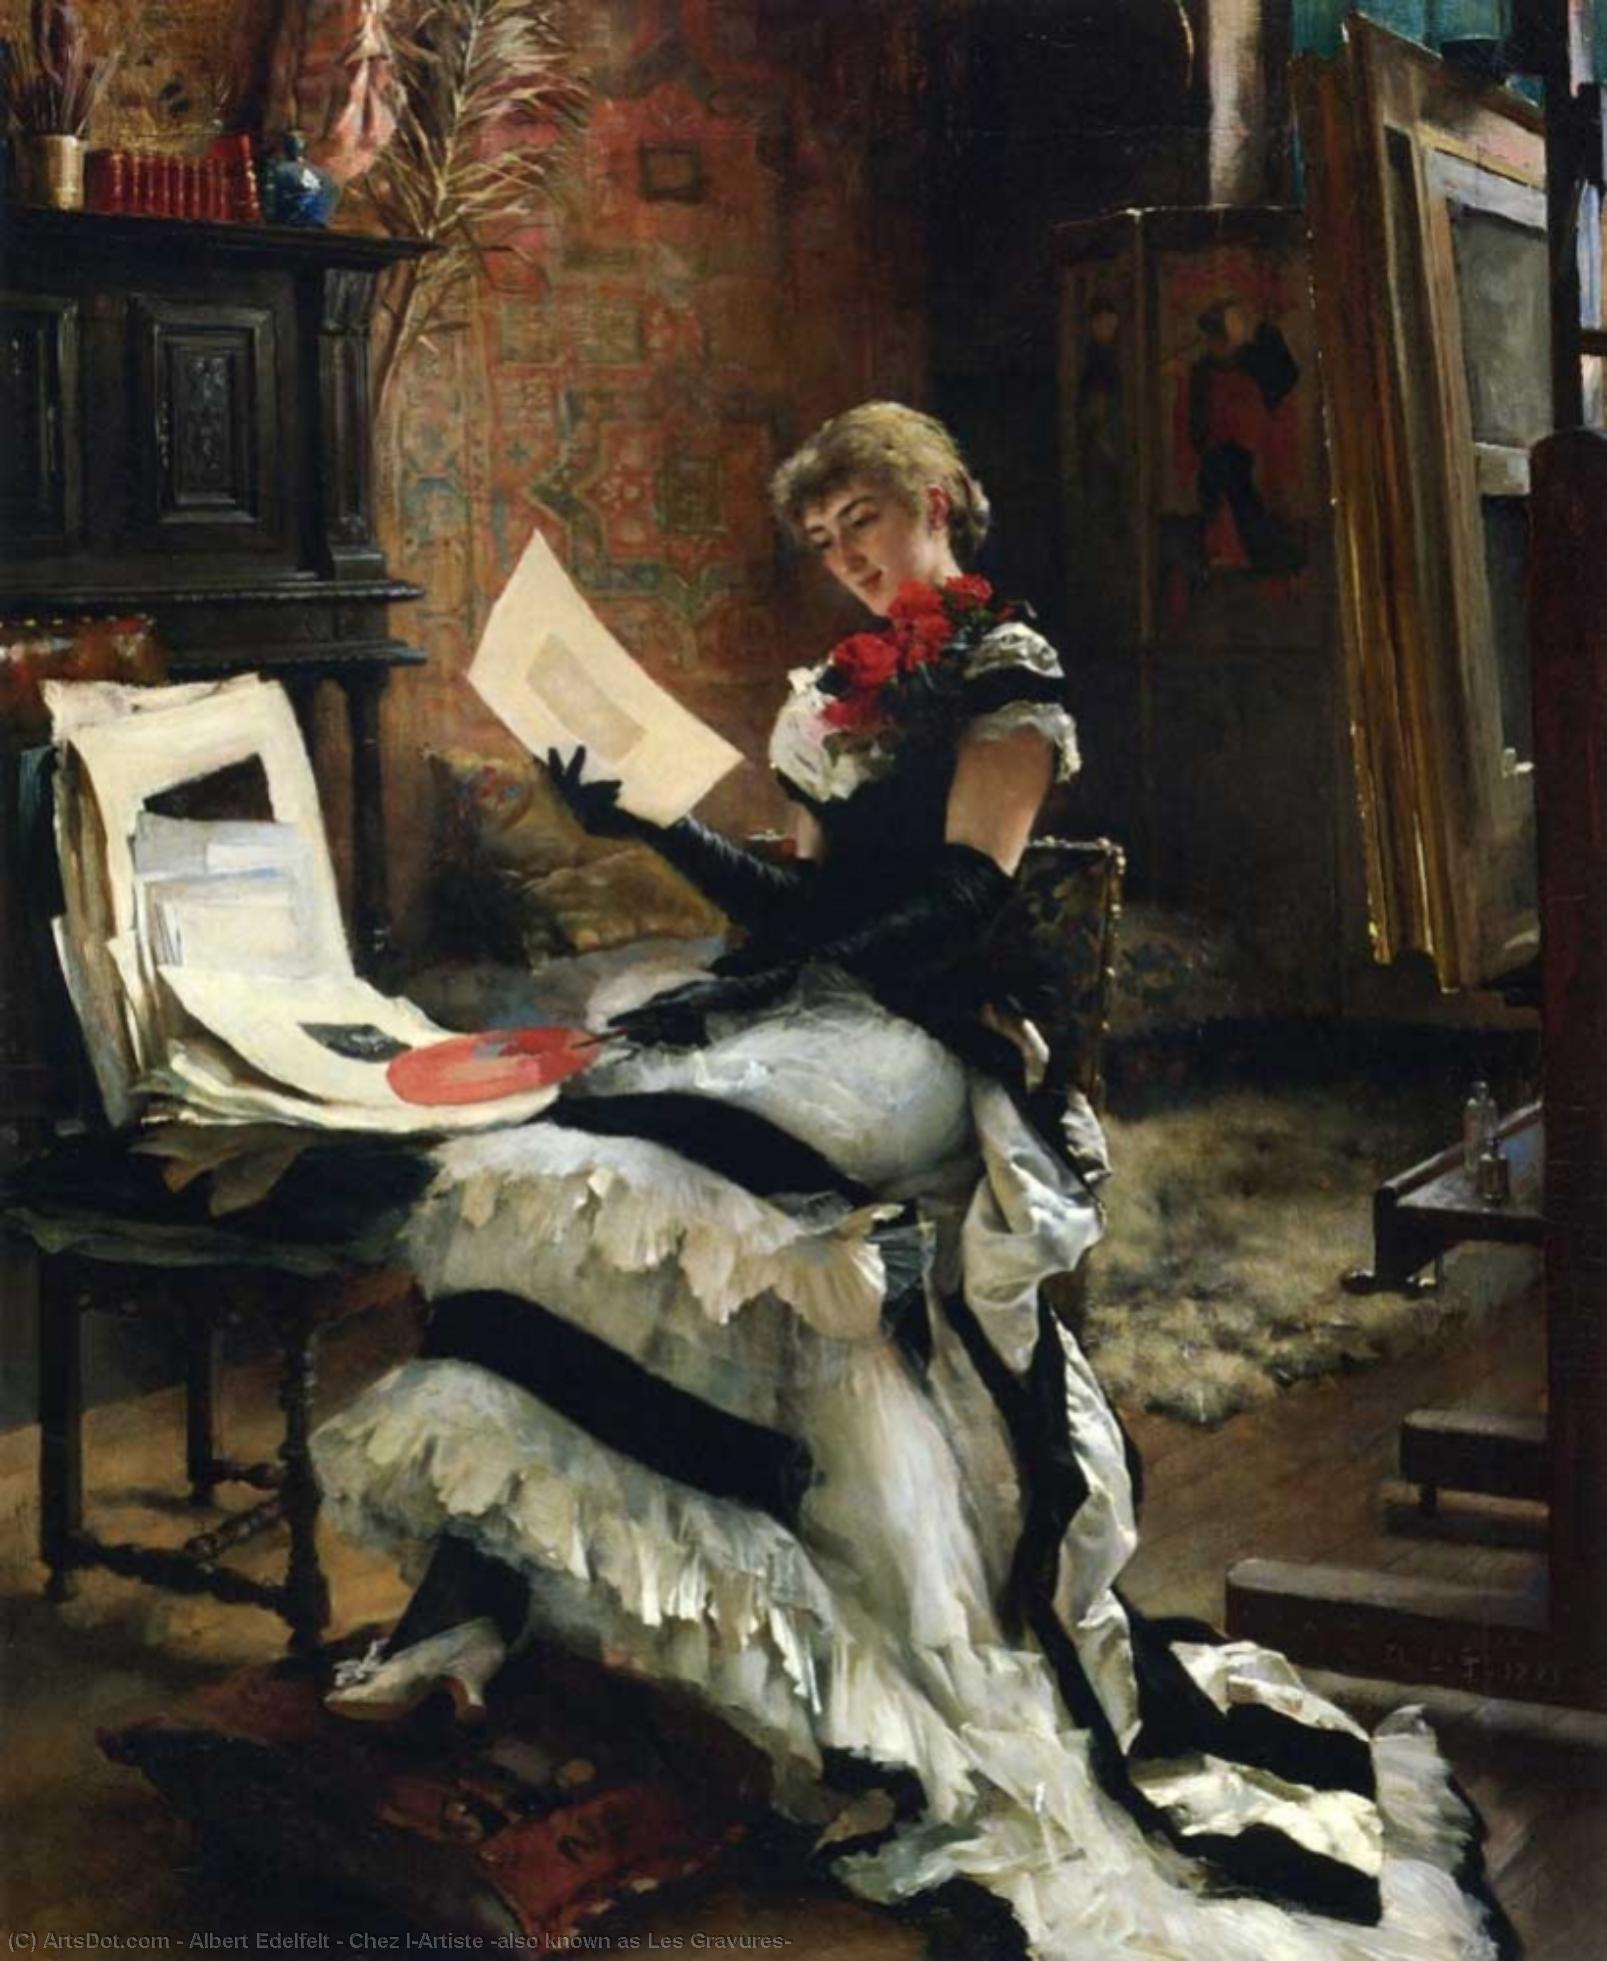 WikiOO.org - אנציקלופדיה לאמנויות יפות - ציור, יצירות אמנות Albert Edelfelt - Chez l'Artiste (also known as Les Gravures)